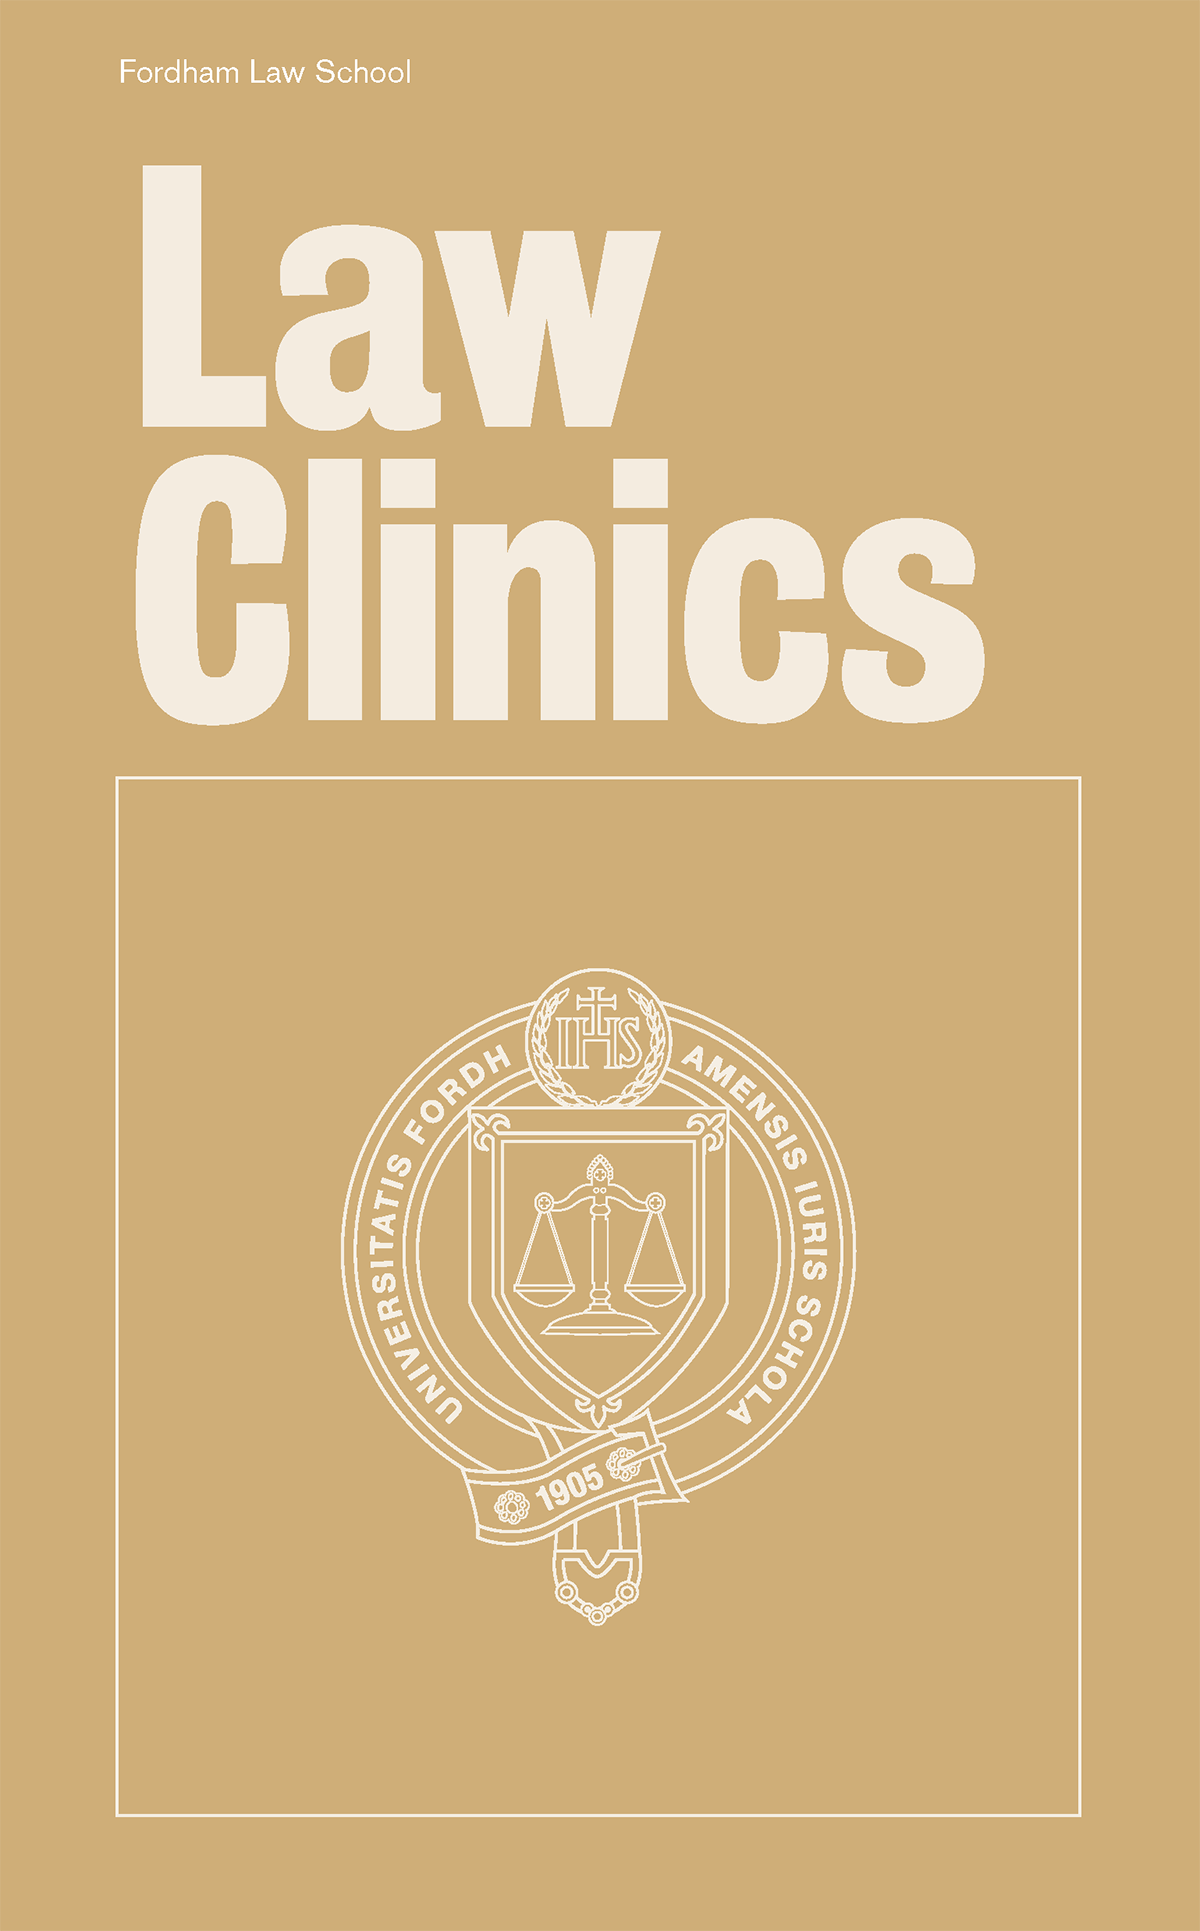 Law Clinics brochure cover